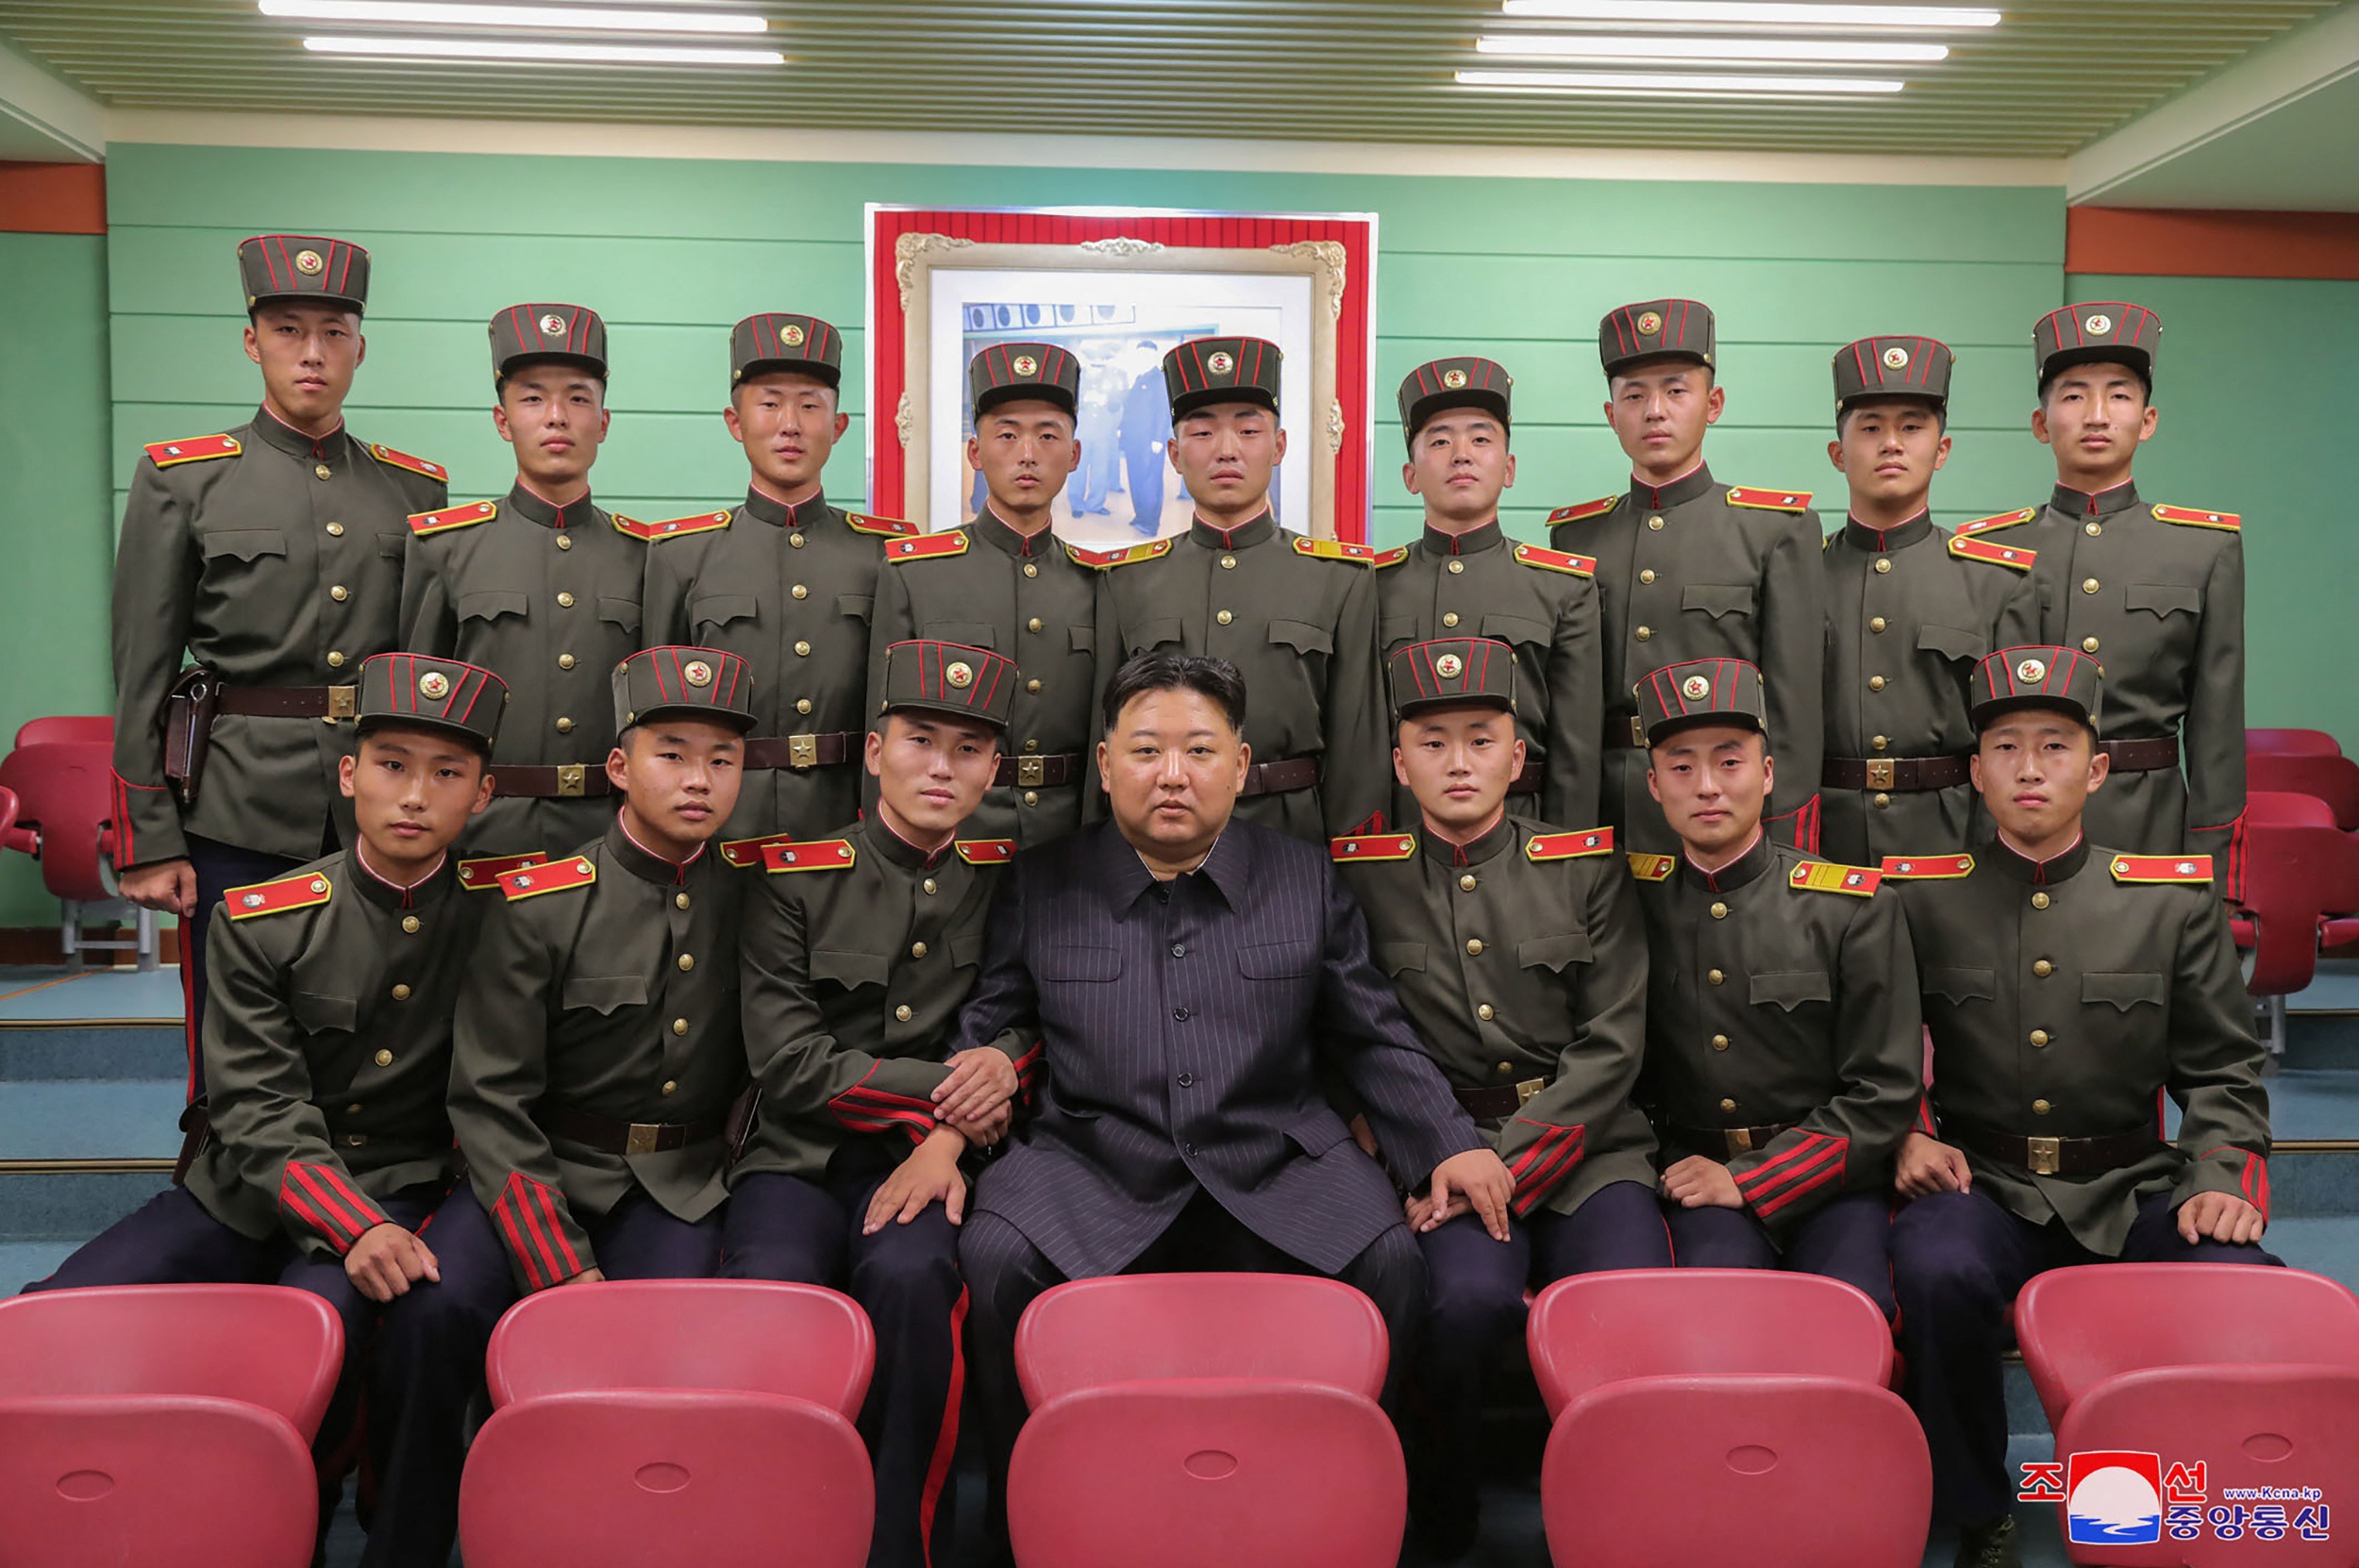 De president voegde bij zijn verklaring in het parlement eraan toe dat de Noord-Koreaanse leider Kim Jong-un het gebruik van kernwapens ter voorkoming van eventuele aanvallen op Noord-Korea heeft verdedigd. De Amerikanen geloven dat de proef 'op elk moment' kan plaatsvinden.